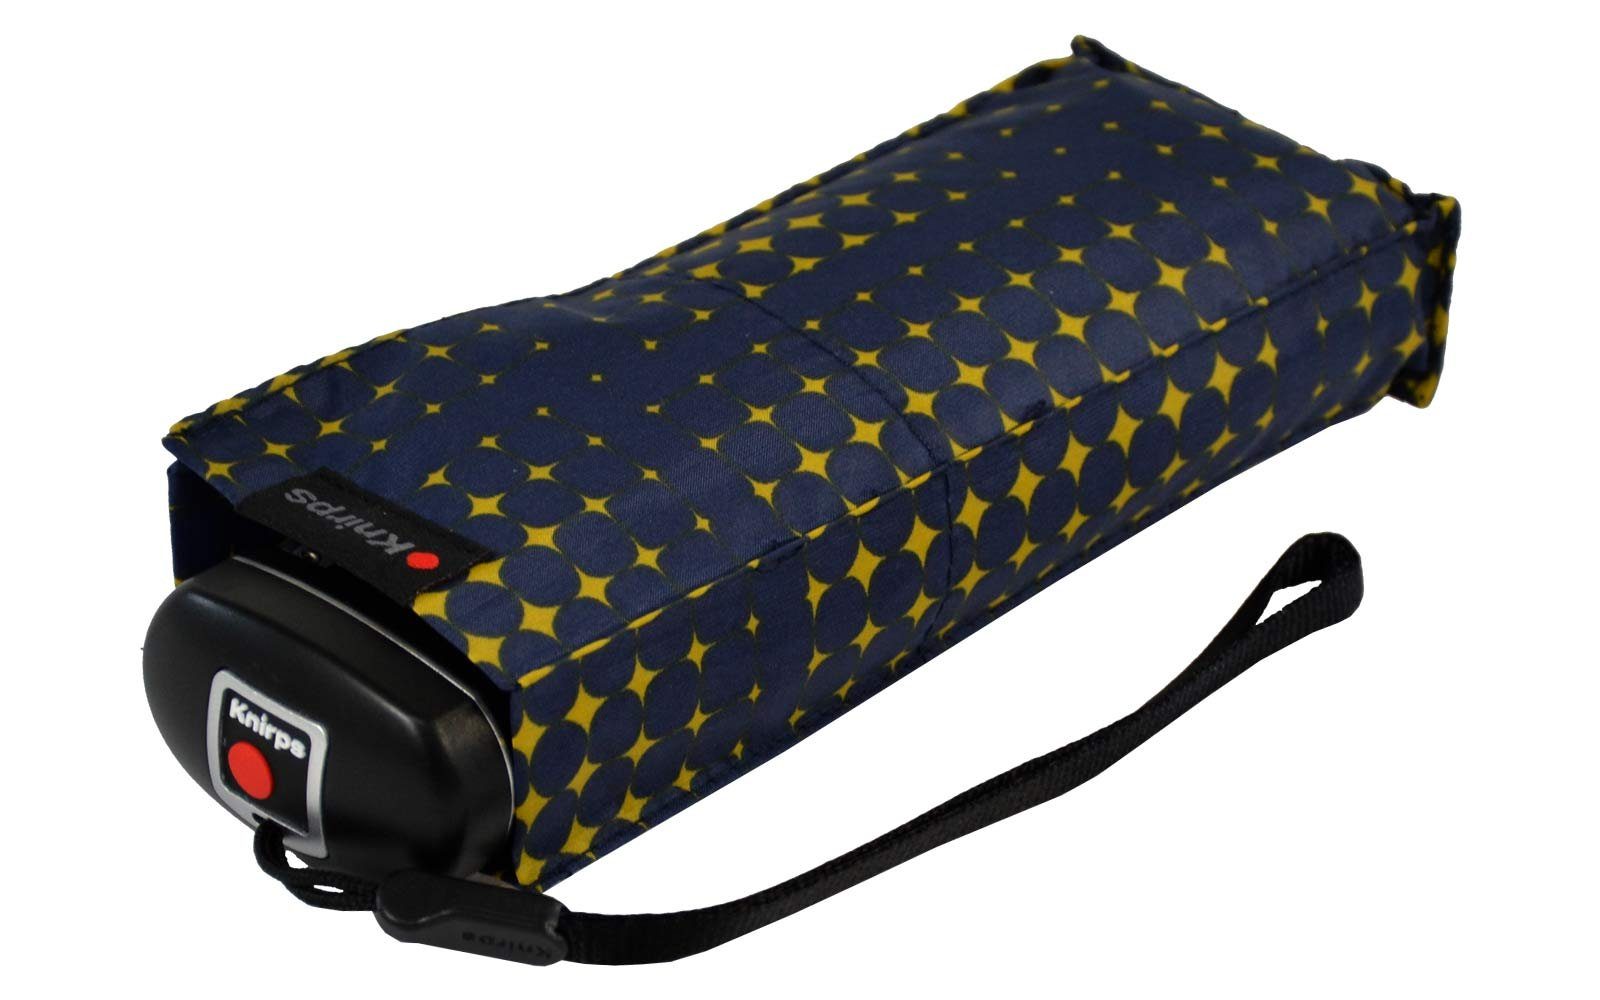 Taschenregenschirm Knirps® kompakt jede navy-blau-gelb leicht Begleiter, klein der zuverlässige - in stars, Mini-Schirm der Travel passt Tasche